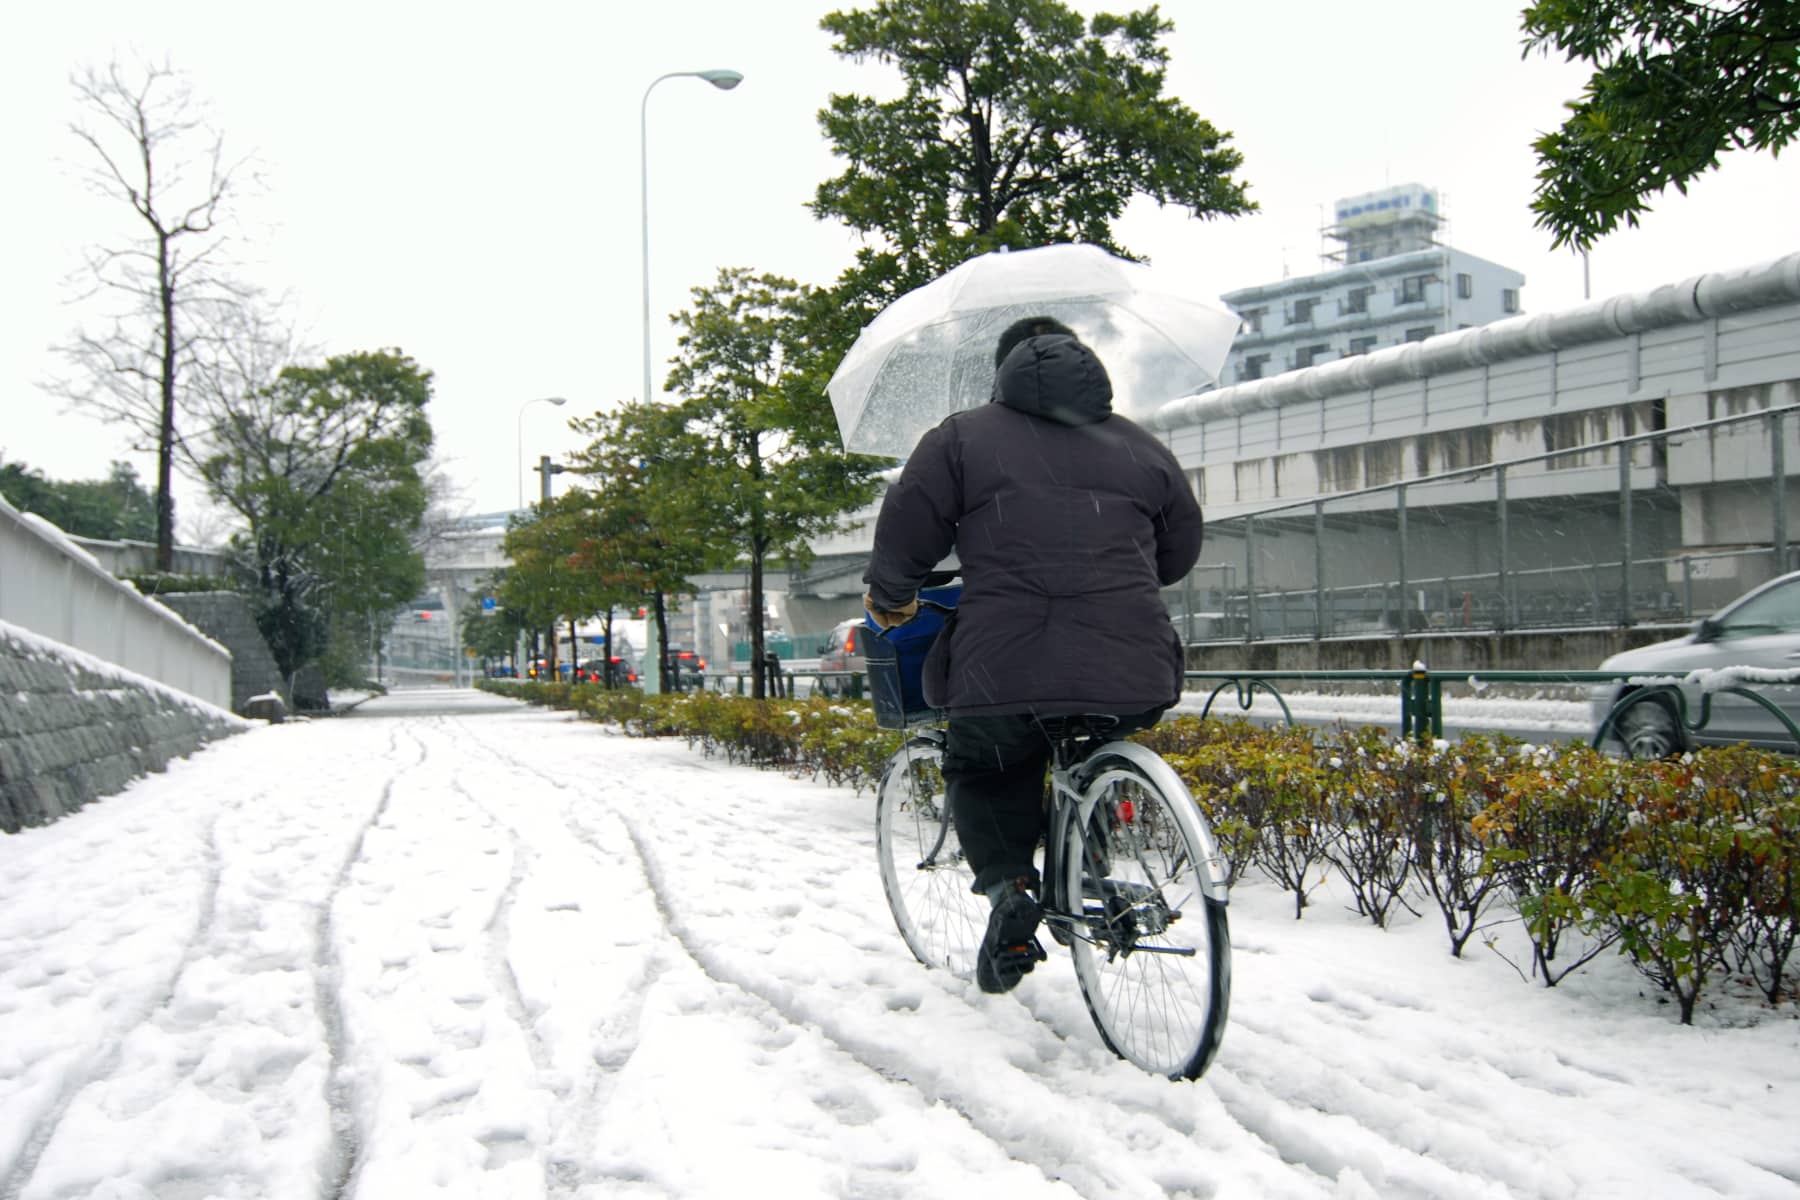 Fahrrad fahren bei Schnee: So kommen Sie unfallfrei ans Ziel